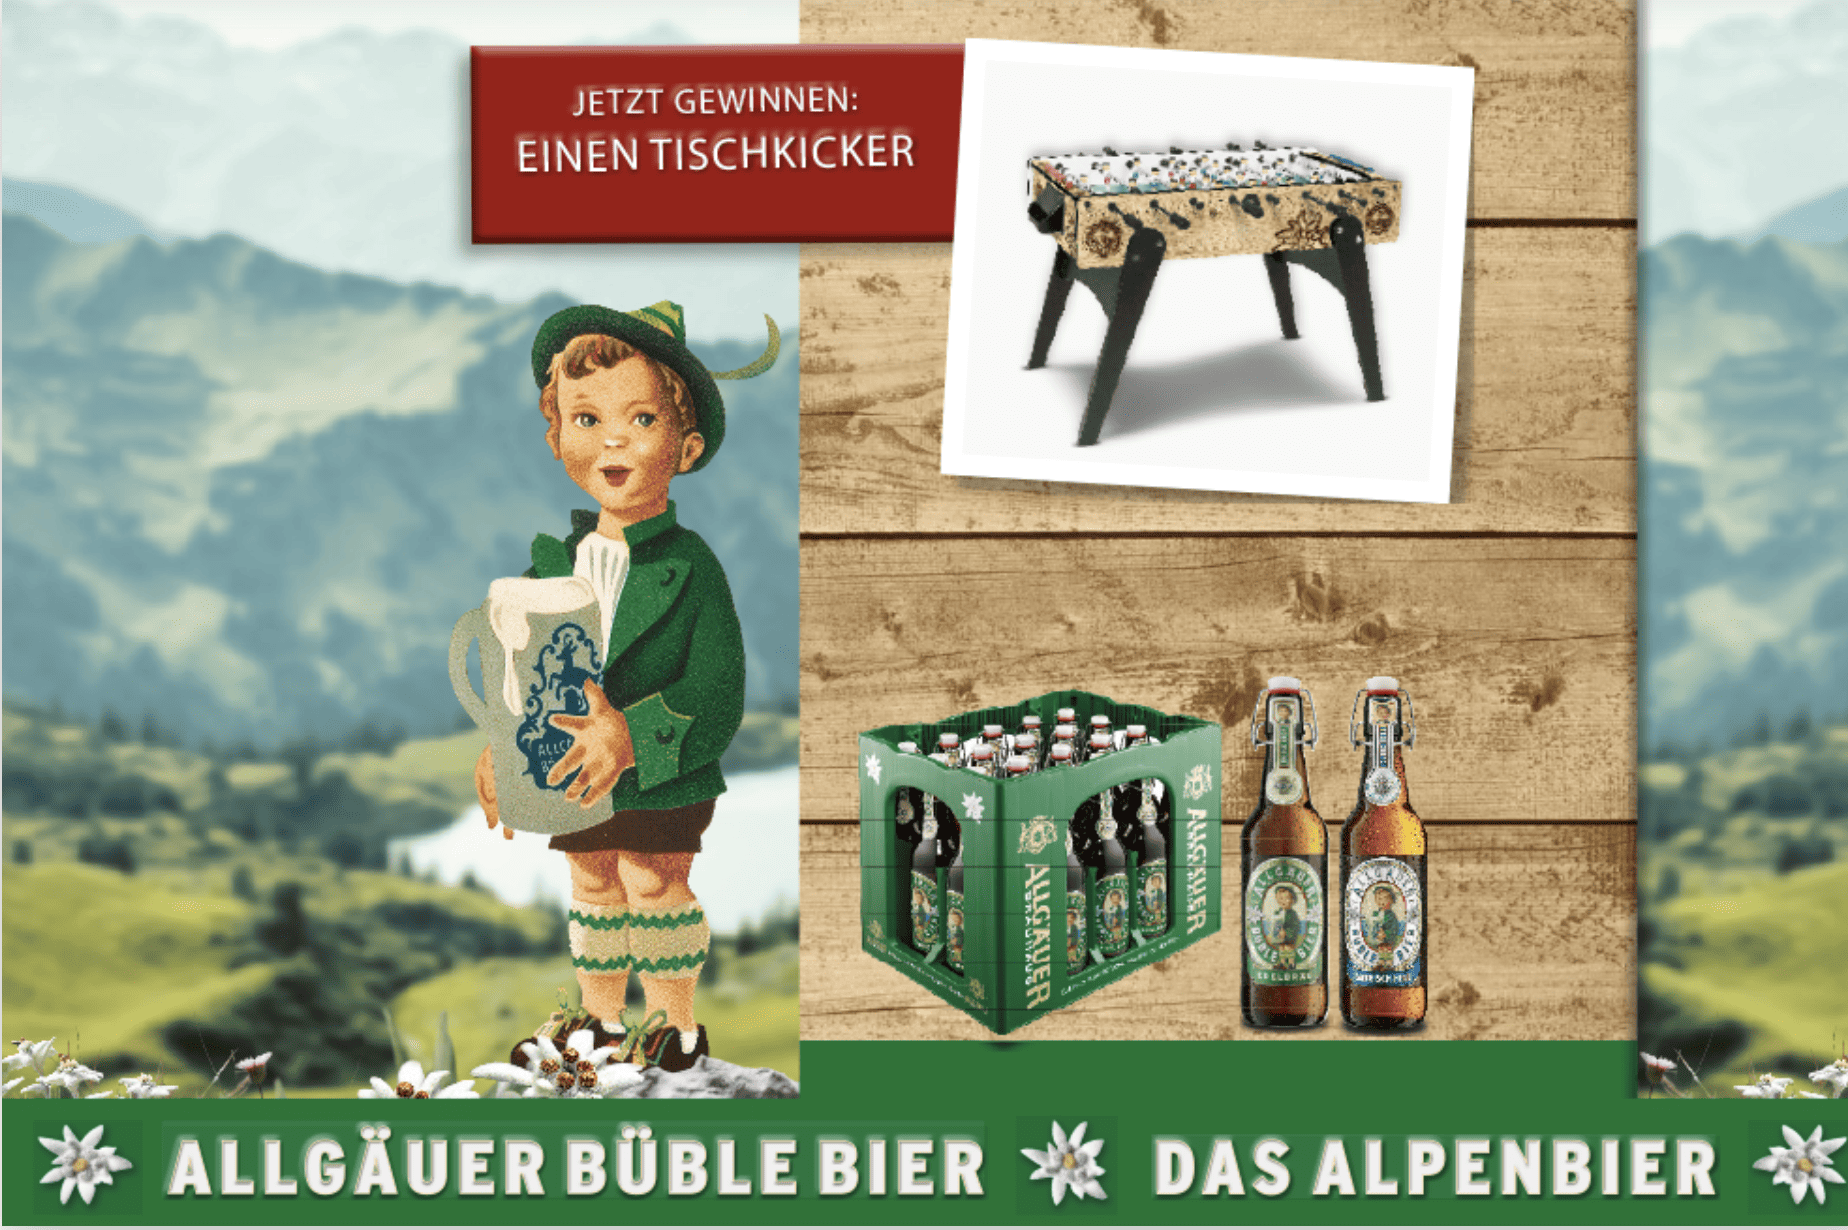 case_GEFAKO_Original Allgäuer Büble Bier Tischkicker gewinnen